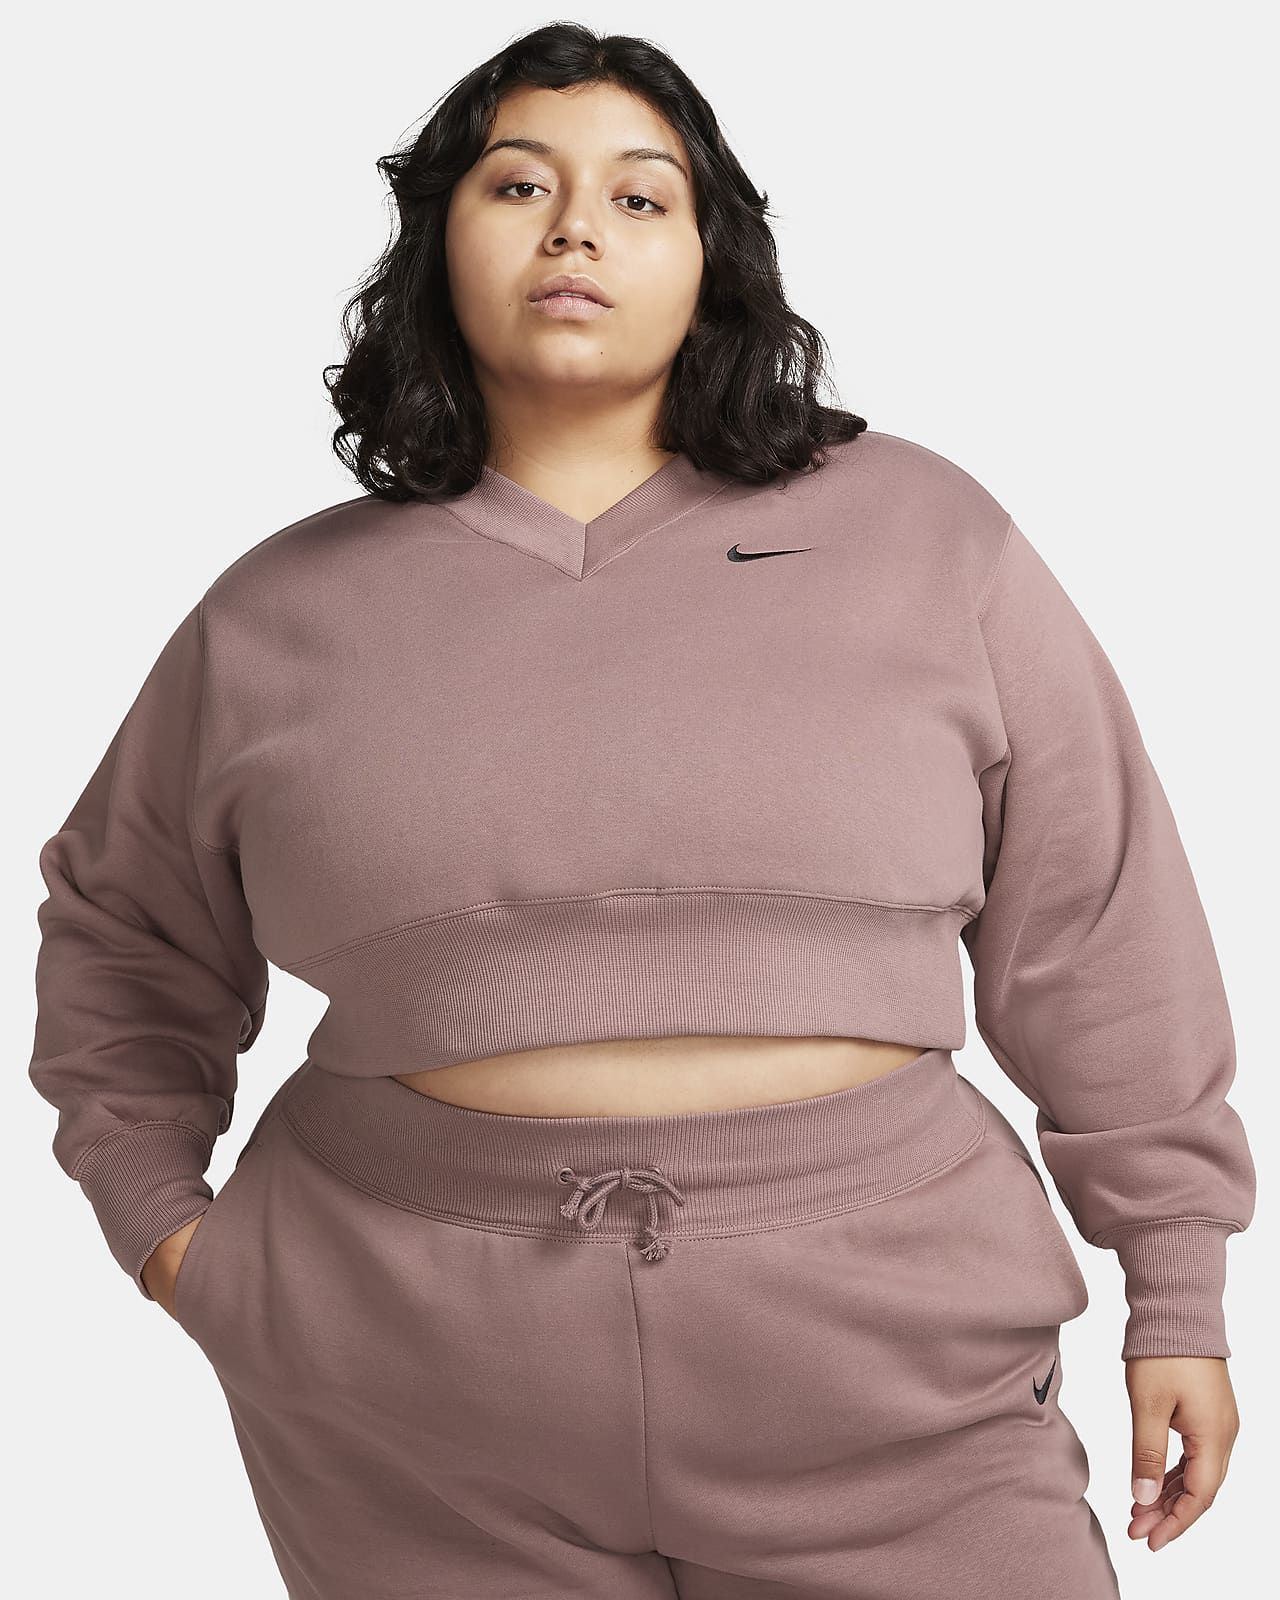 Nike Sportswear Phoenix Fleece Women's Oversized Cropped V-Neck Top (Plus Size). Nike.com | Nike (US)